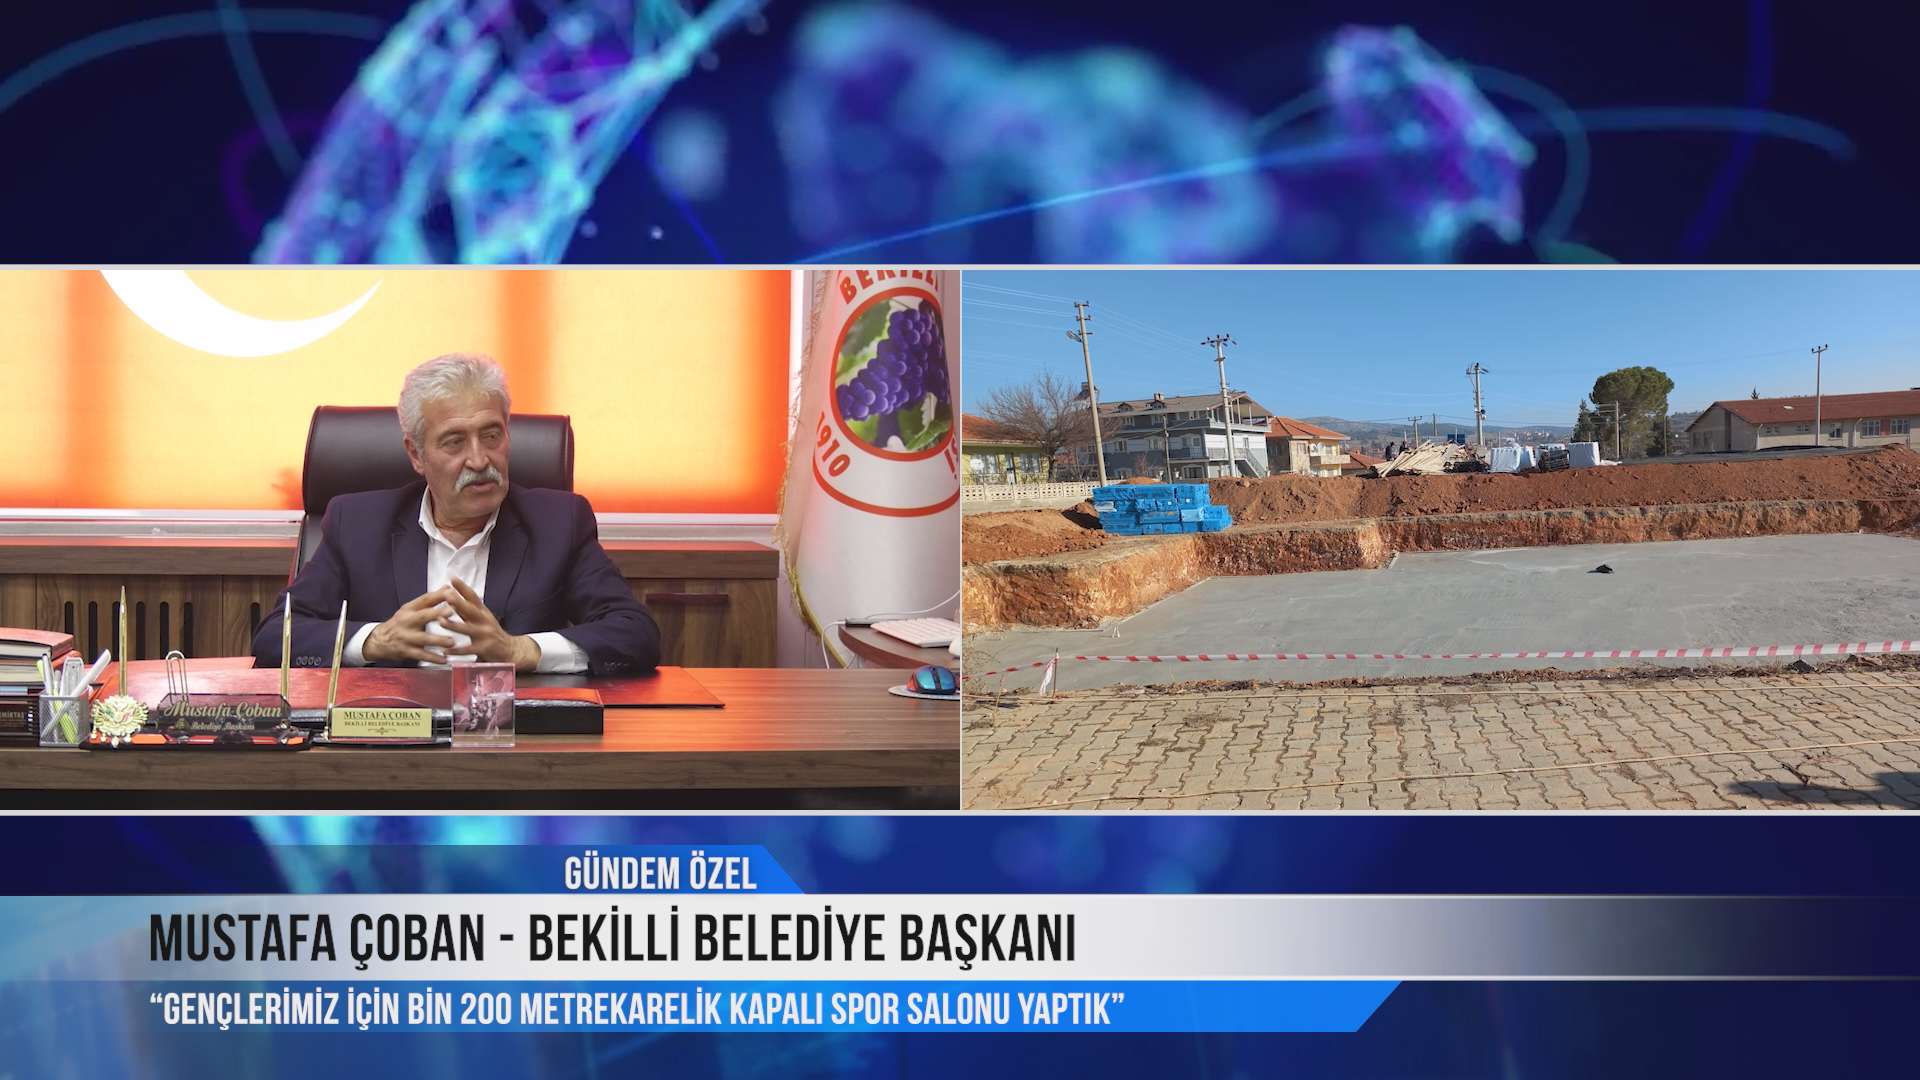 Bekilli Belediye Başkanı Mustafa Çoban Gündem Özel Programında Geçen Dönemde Yaptığı Projelerden Bahsetti